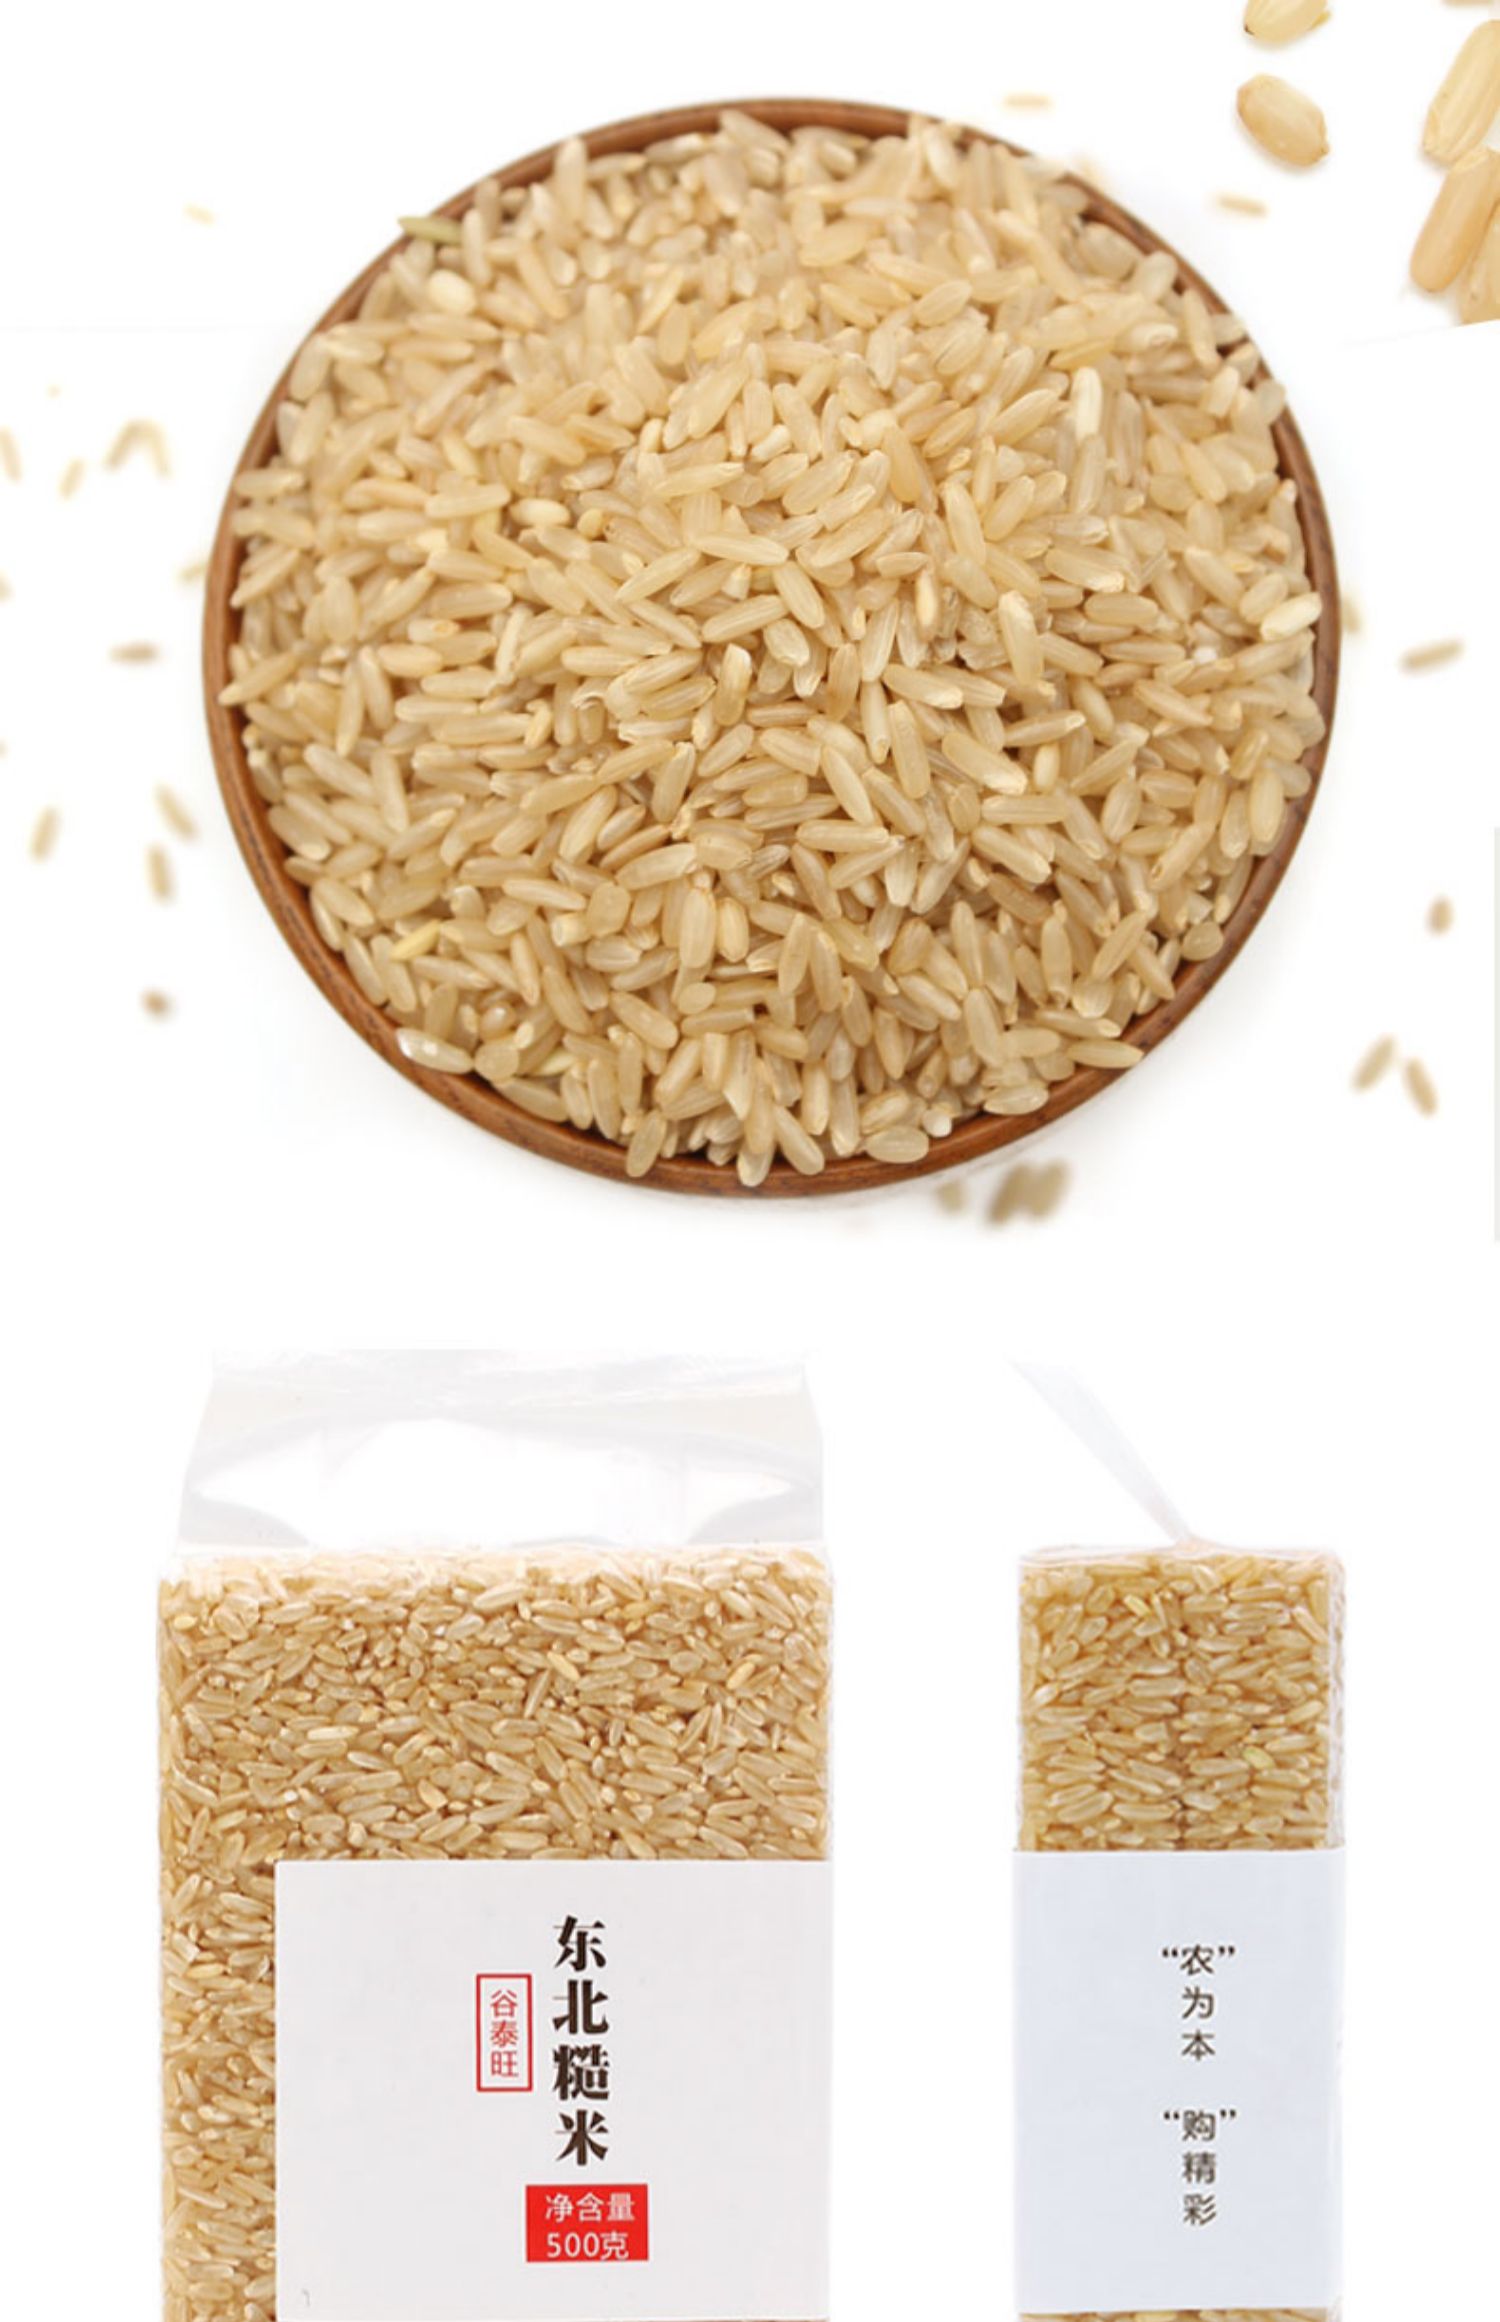 糙米超市又叫什么米图片